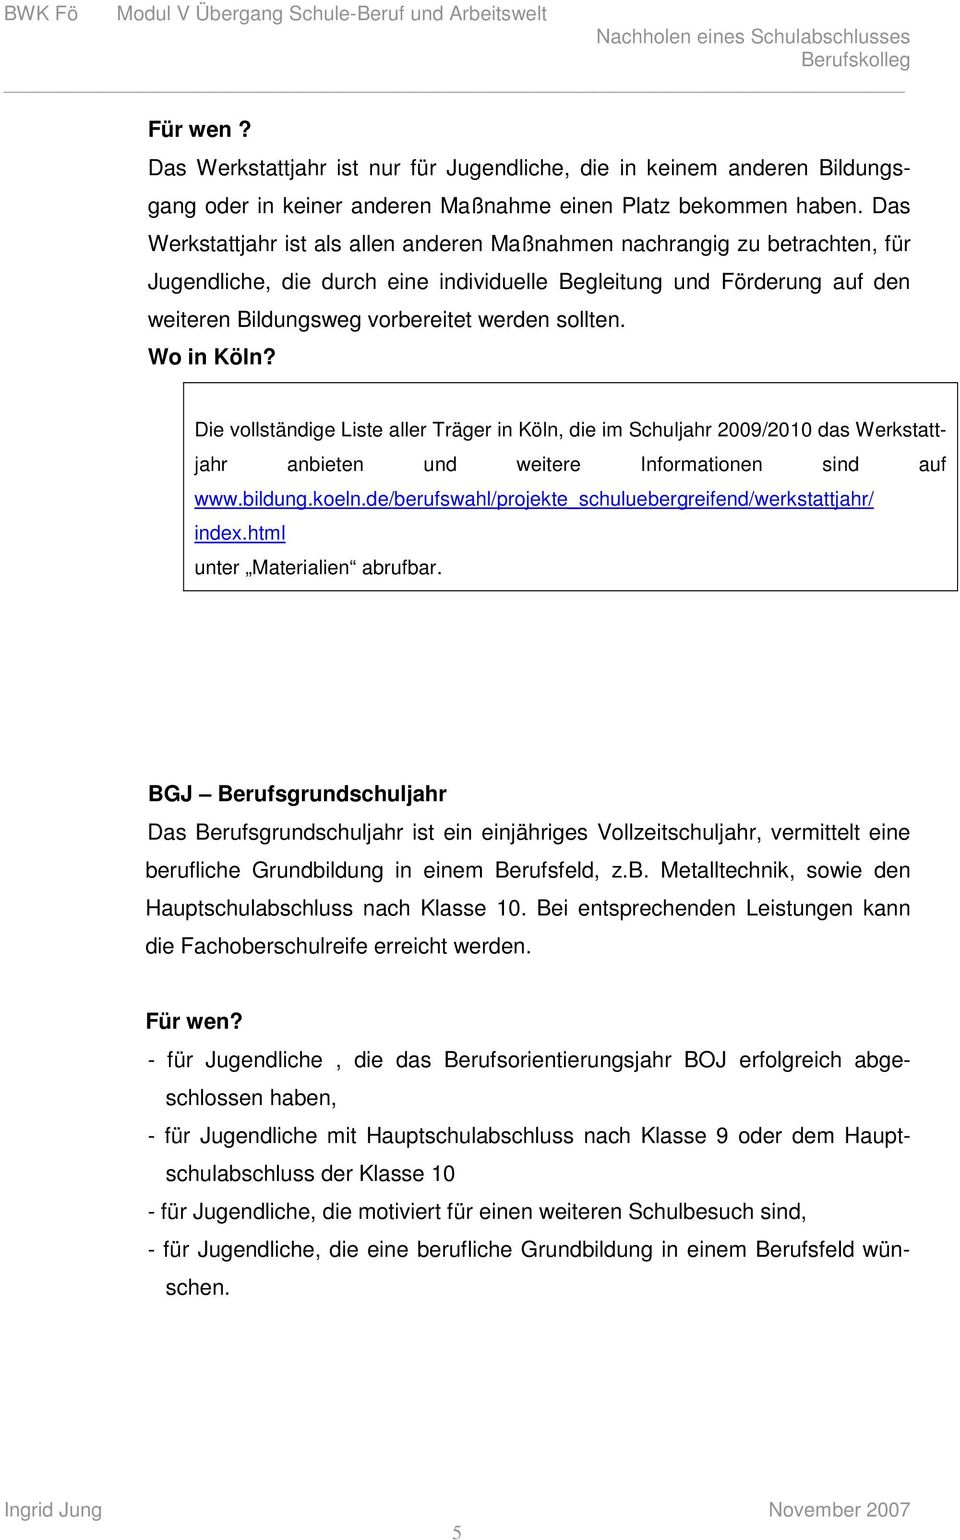 sollten. Die vollständige Liste aller Träger in Köln, die im Schuljahr 2009/2010 das Werkstattjahr anbieten und weitere Informationen sind auf www.bildung.koeln.